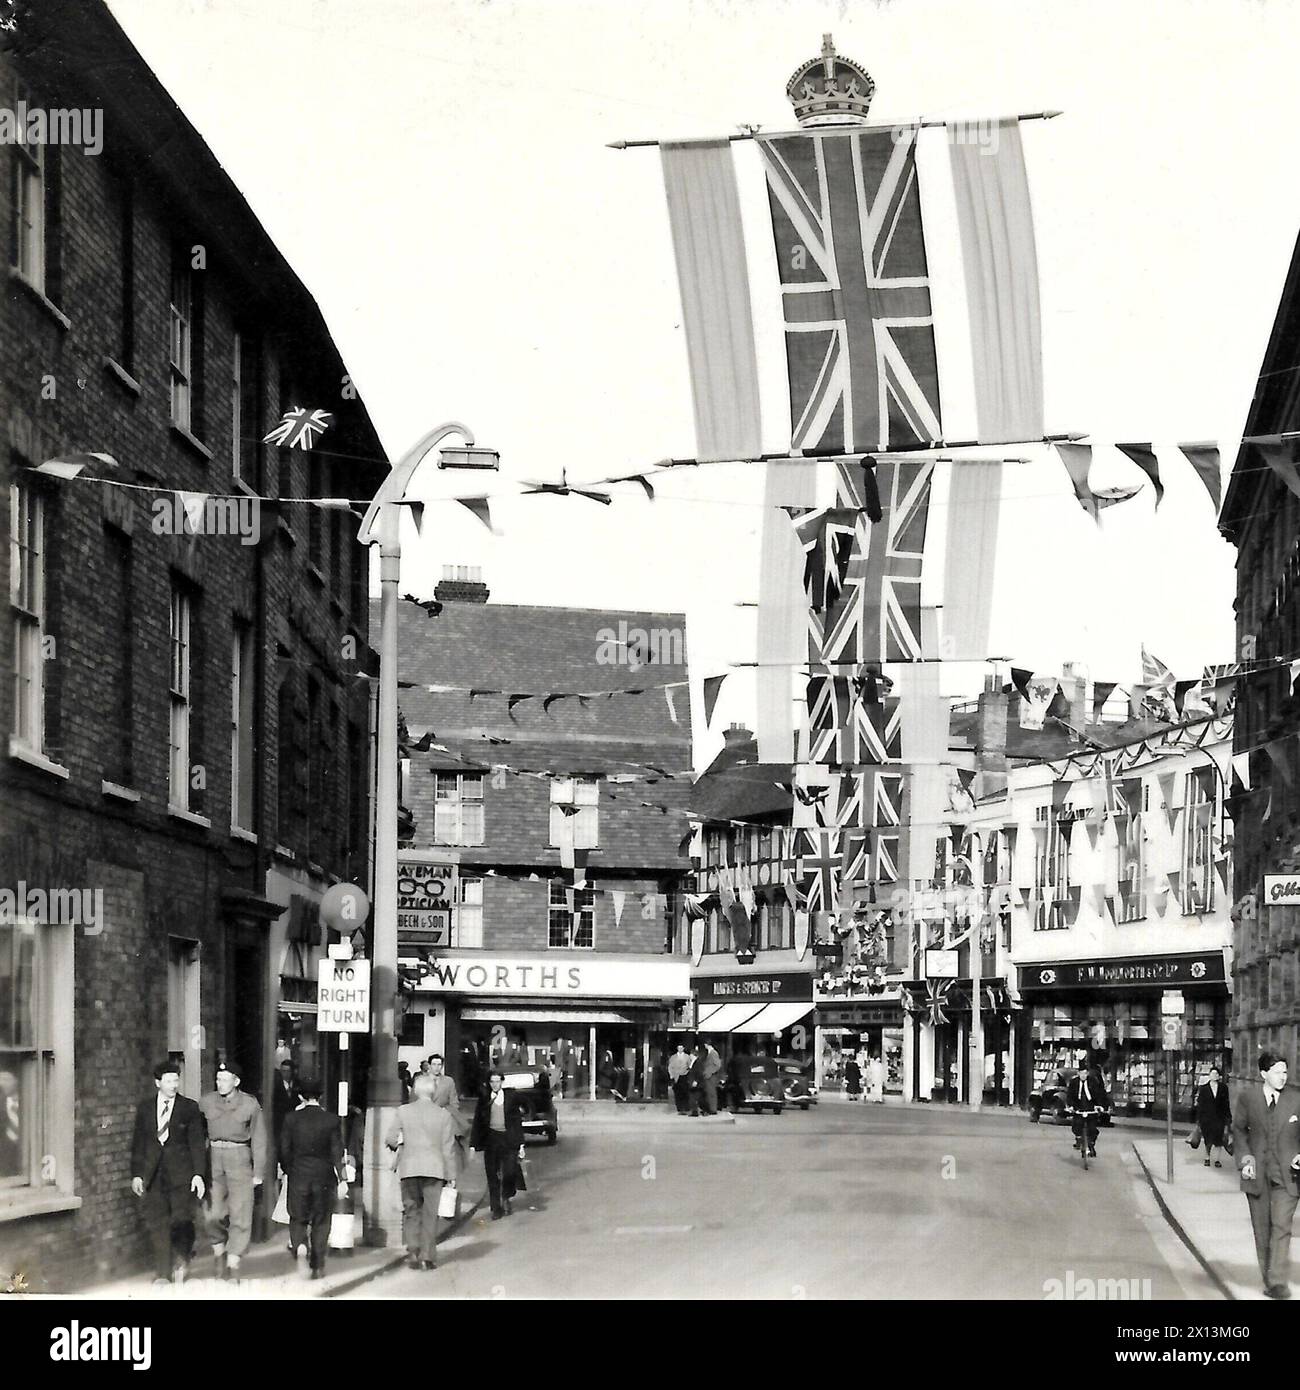 Bridge Street, Salisbury, Wiltshire. Royaume-Uni circa 1953. Copie d'une photo qui aurait été prise des célébrations du couronnement de la Reine en 1953 Banque D'Images